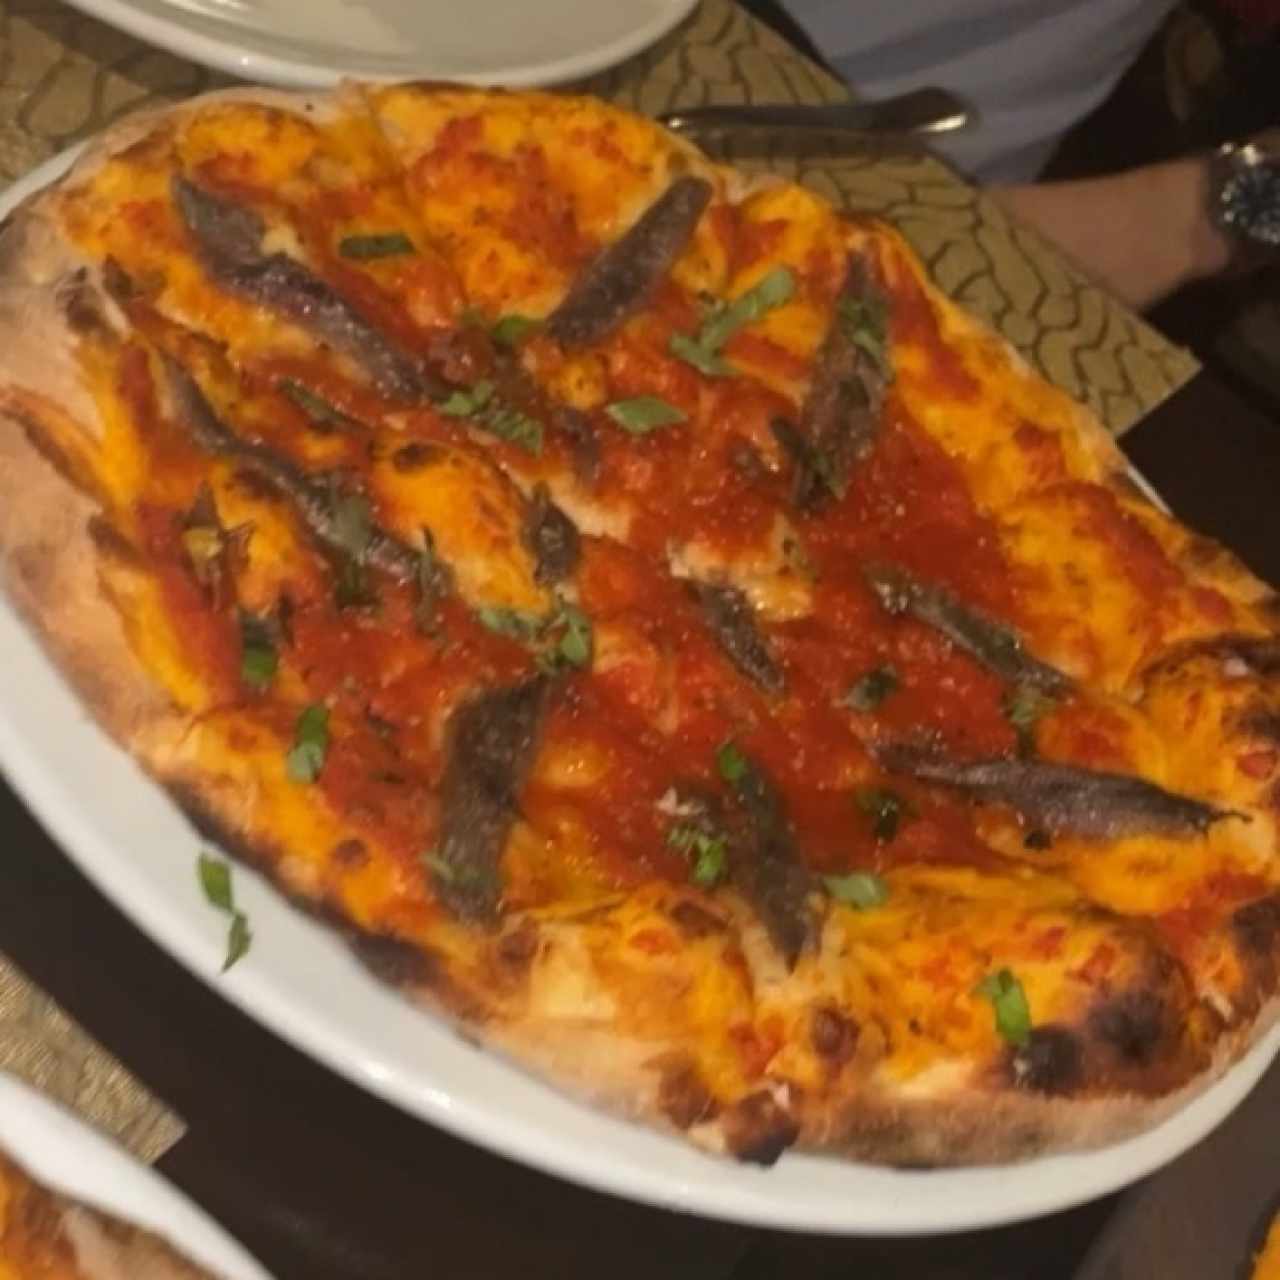 Pizza napolitana